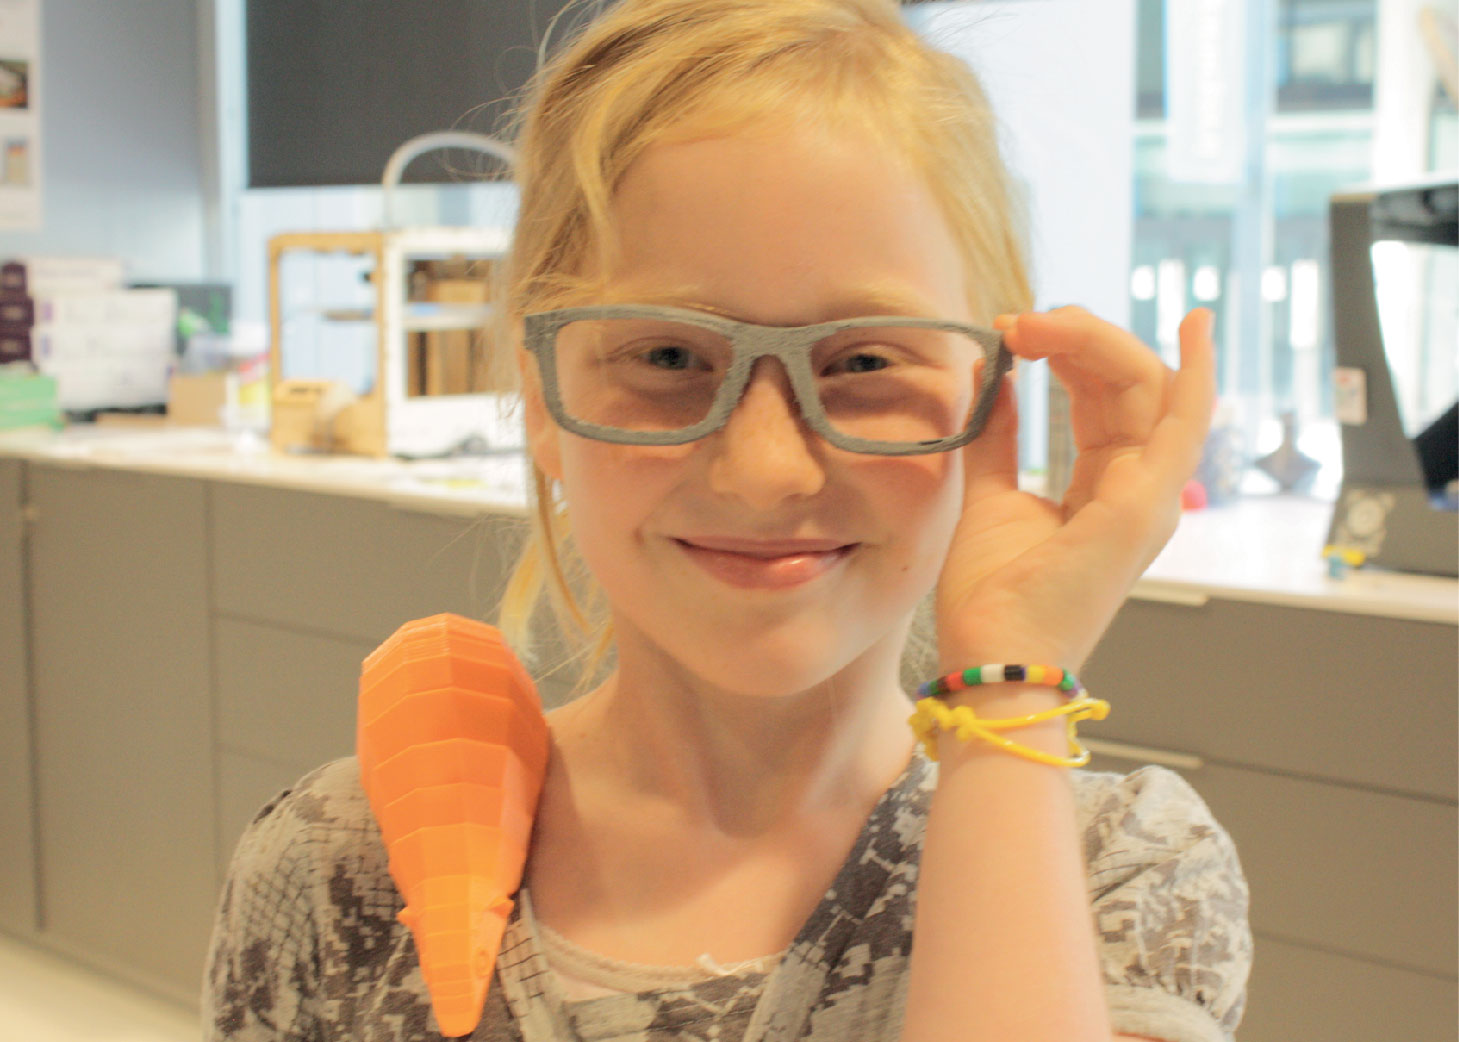 Una niña que sonríe y usa gafas impresas en 3d.